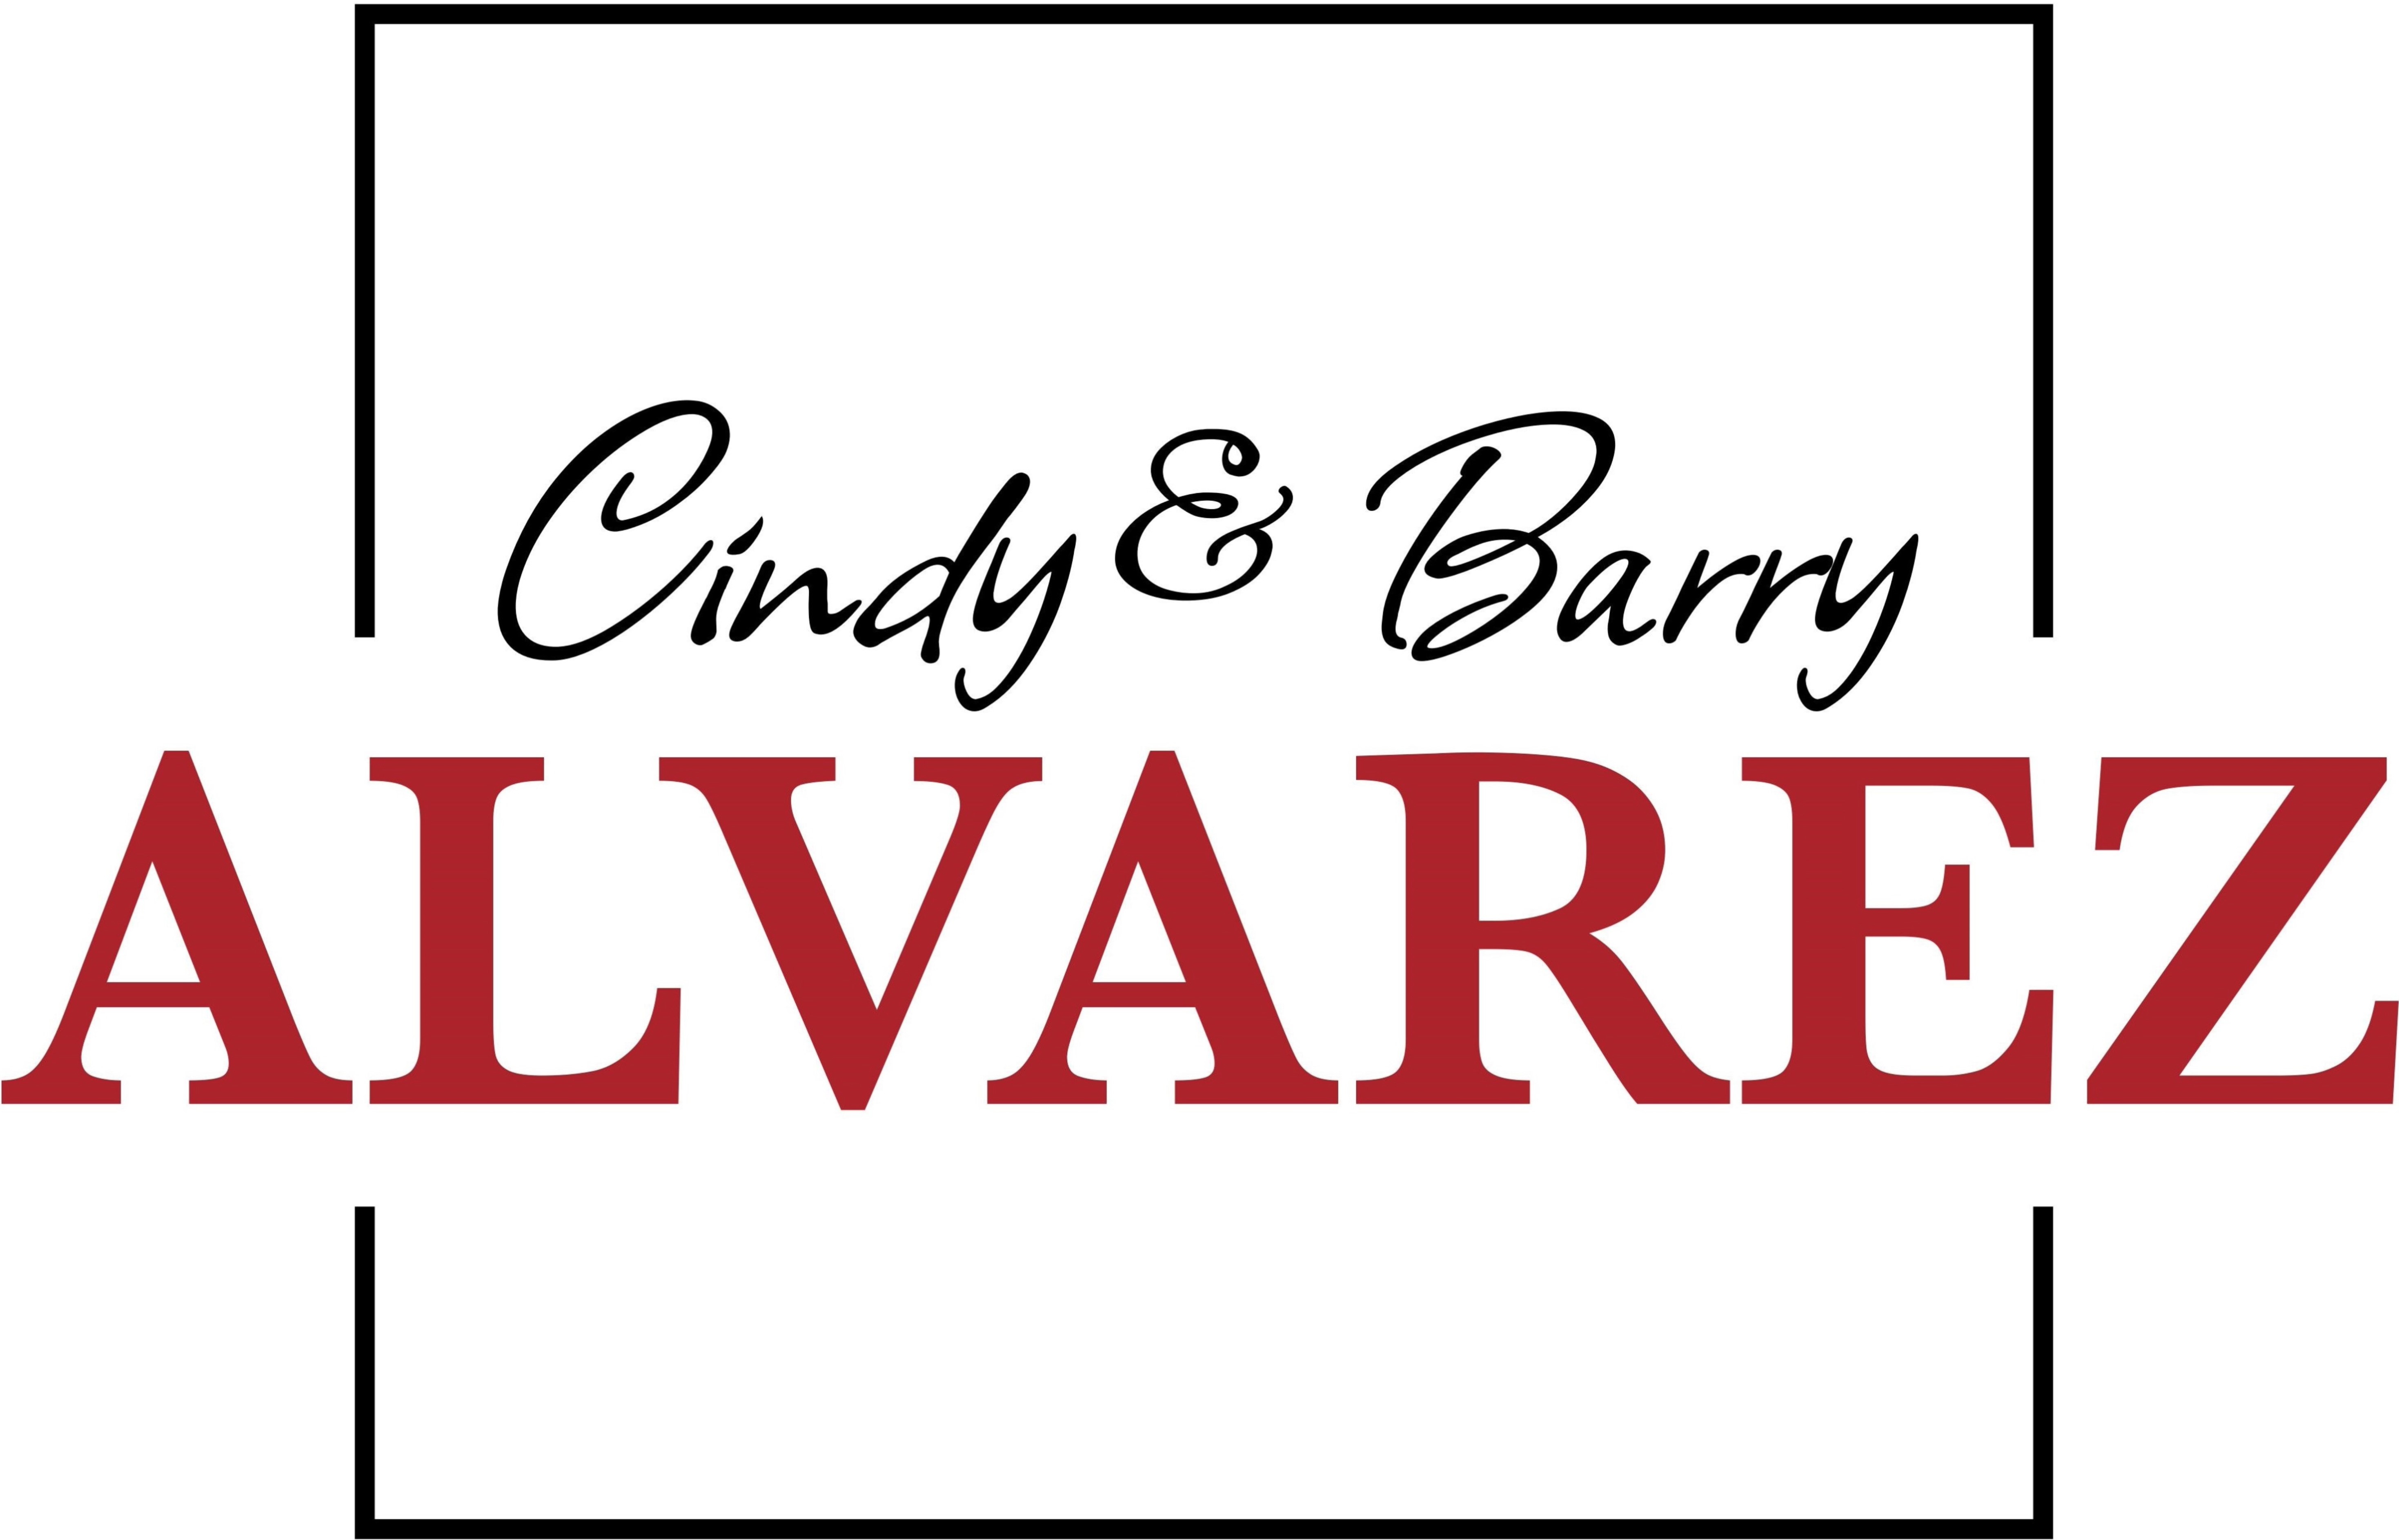 Barry and Cindy Alvarez